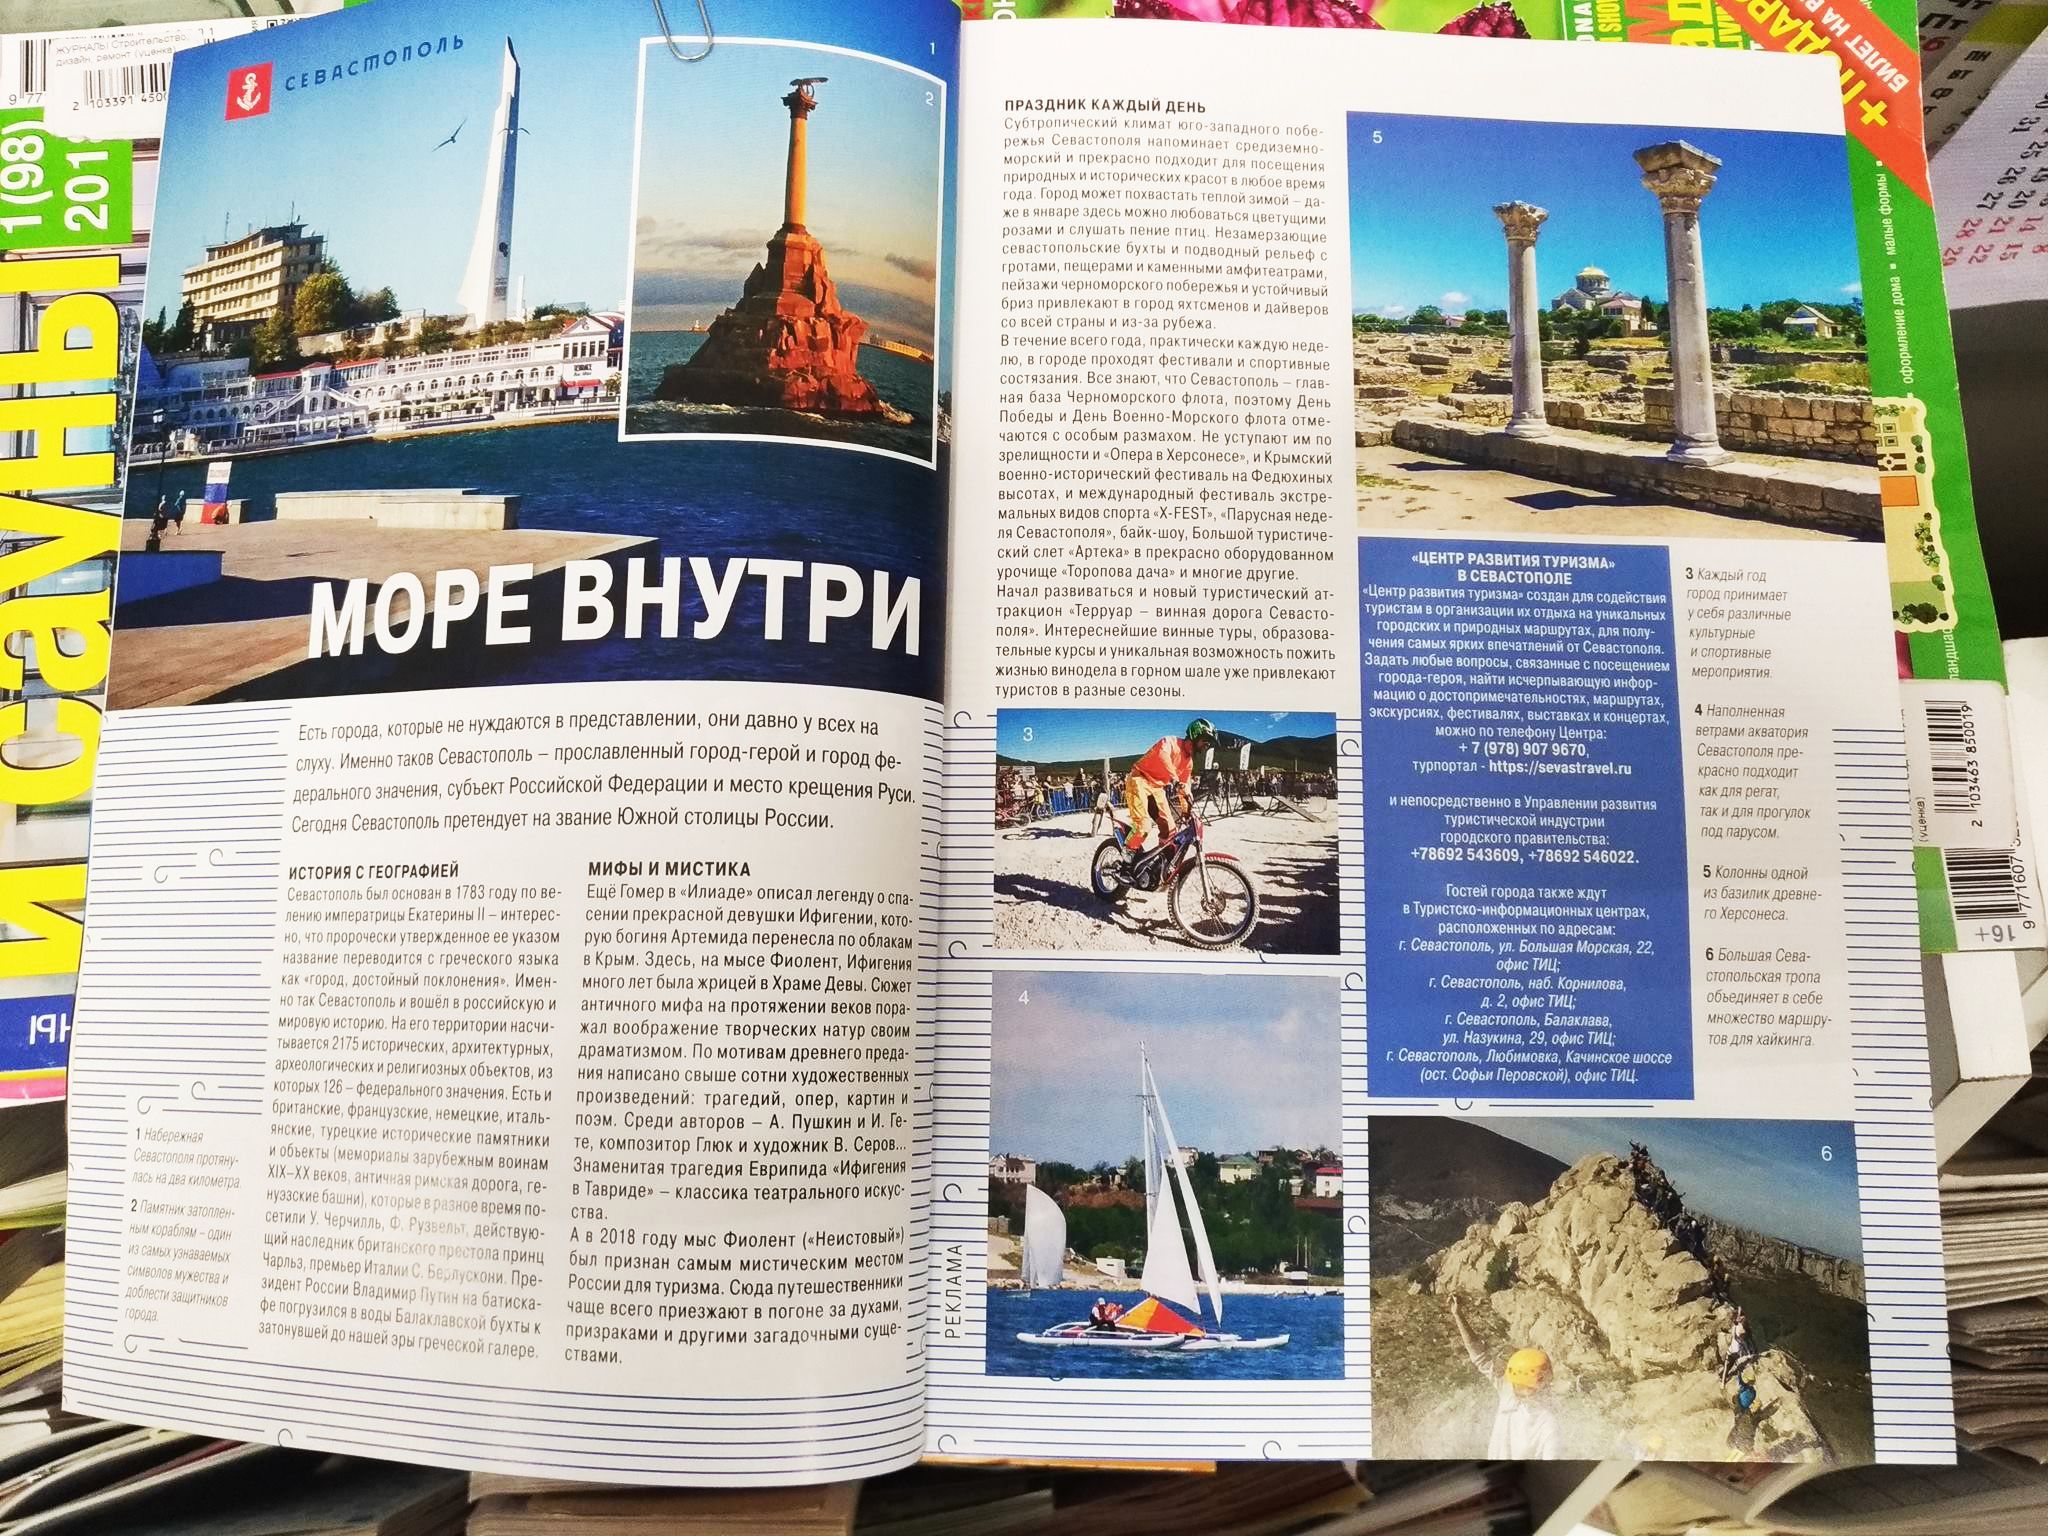 National Geographic назвал Севастополь российским городом, который крестил Киевскую Русь